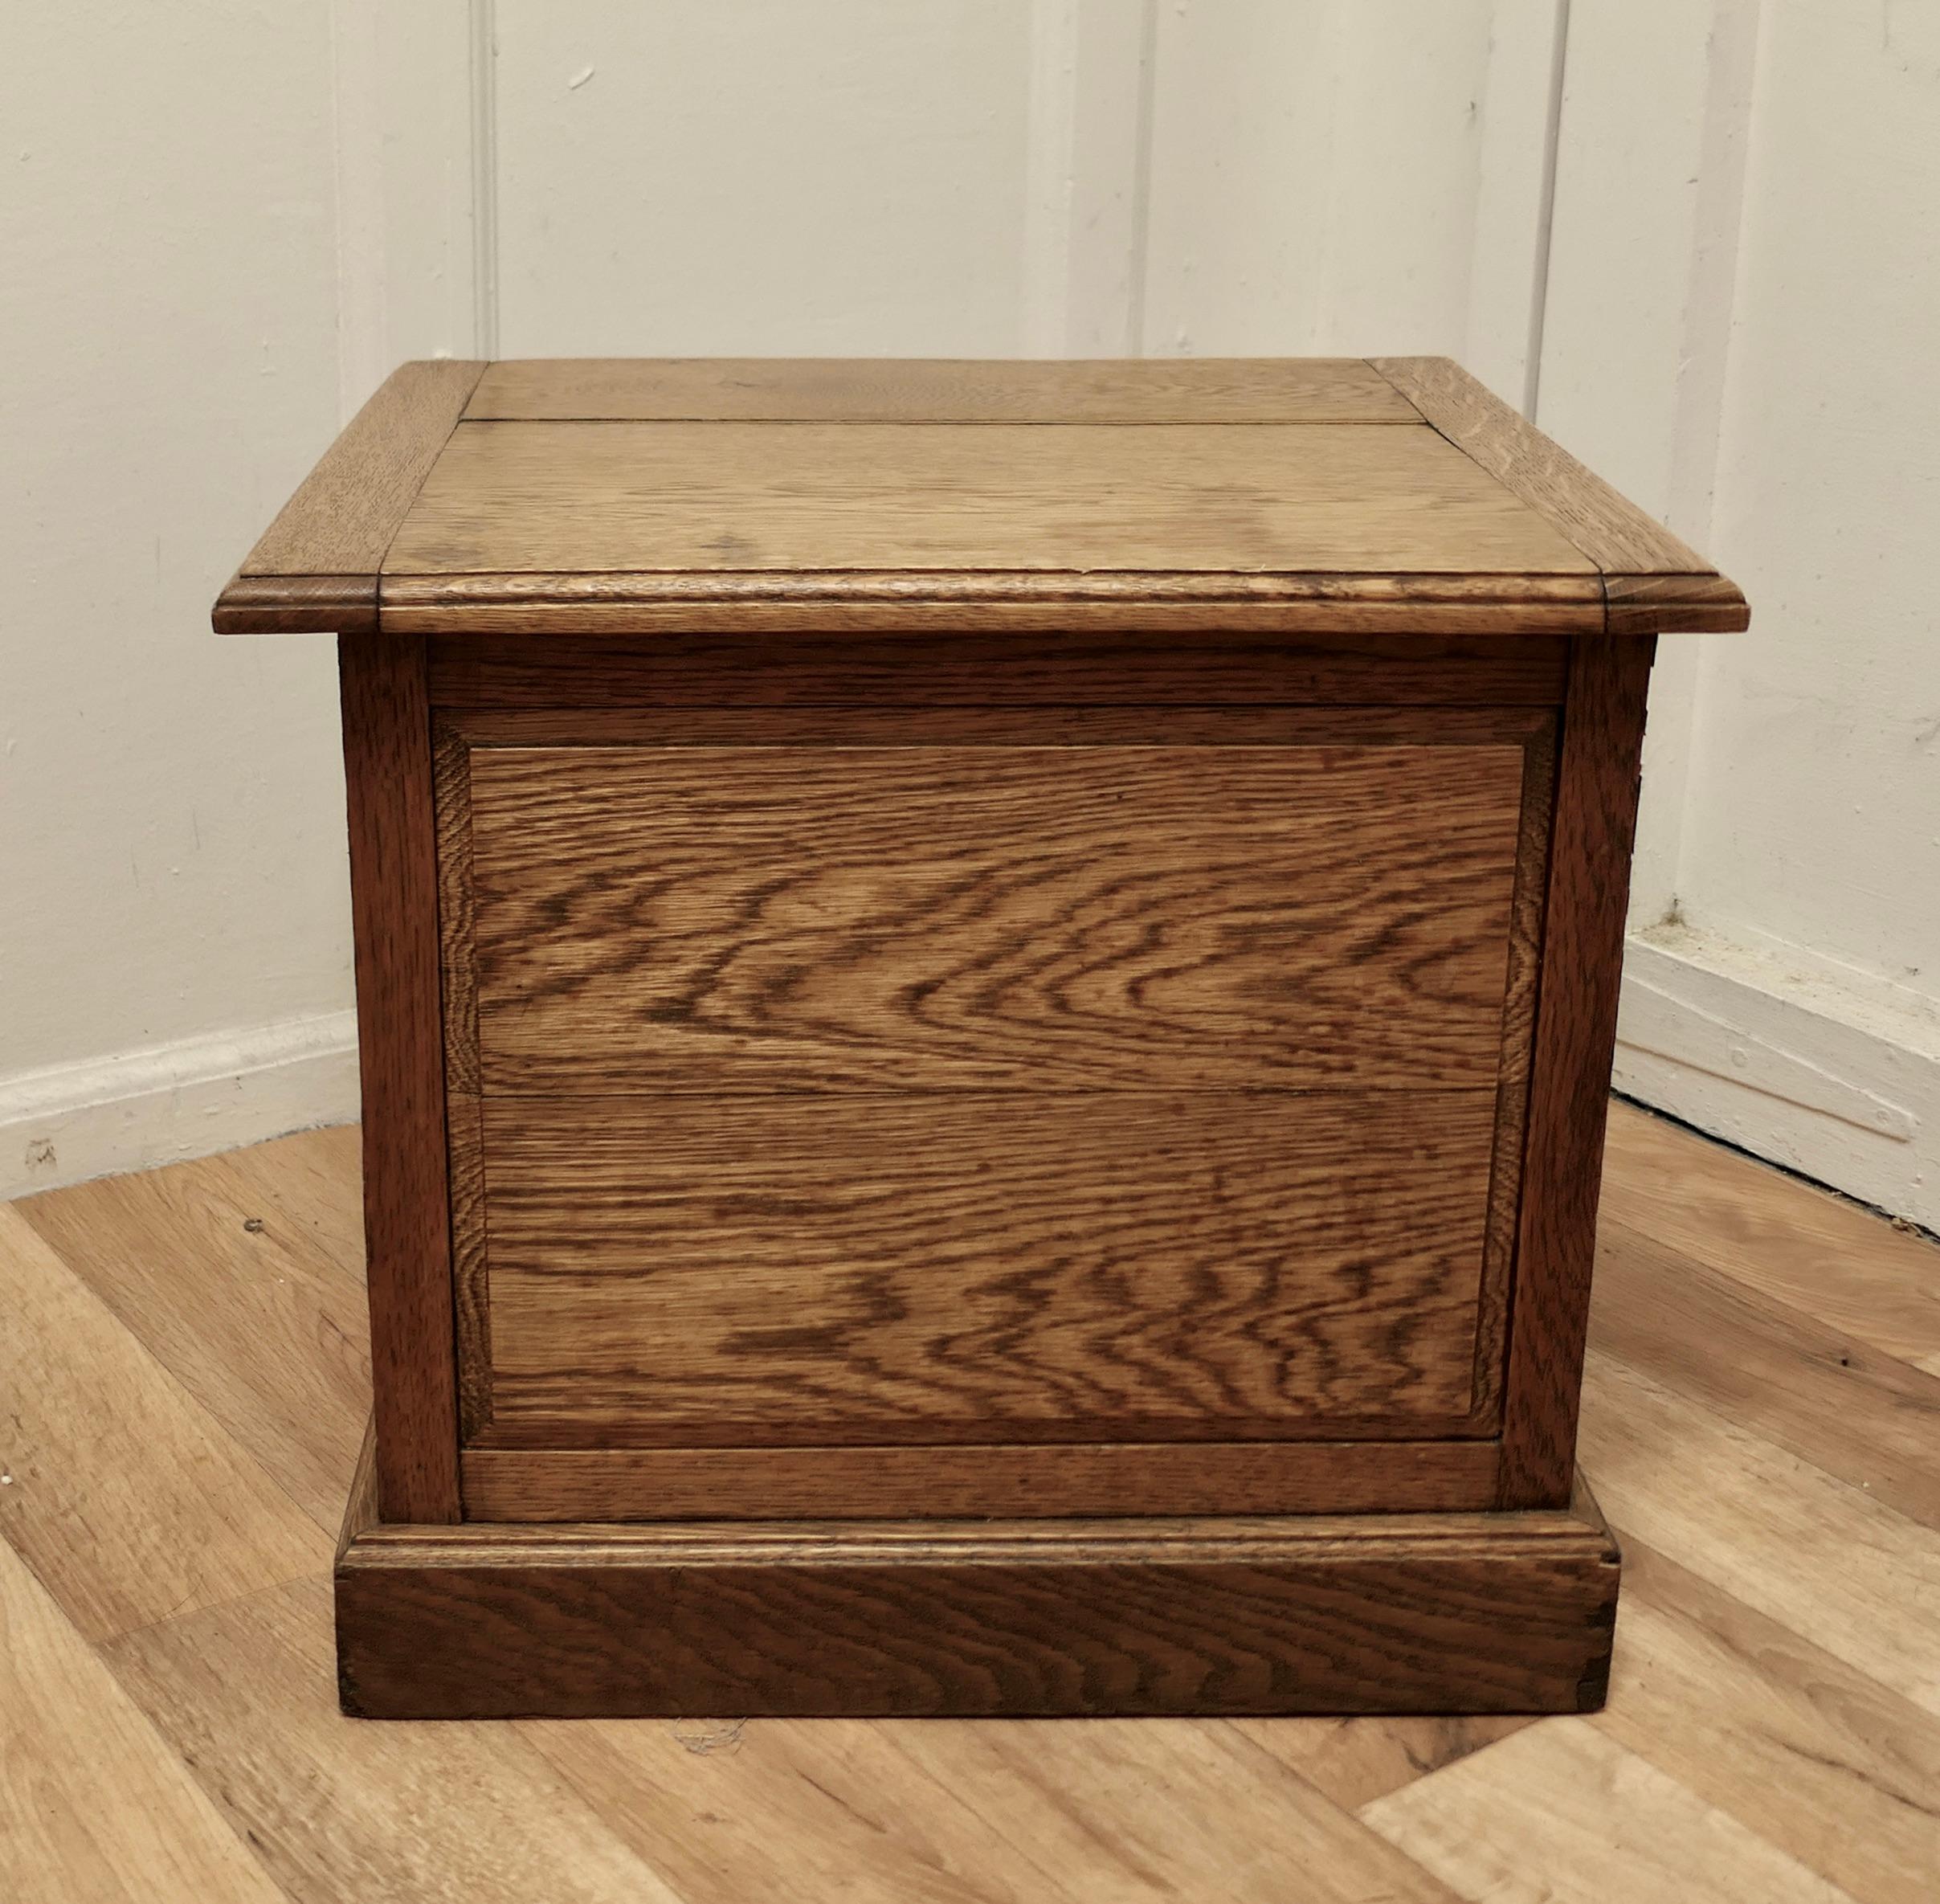 Arts and Crafts Golden Oak Log Box, Sitzgelegenheit oder Beistelltisch

Dies ist eine gute Qualität Aufbewahrungsbox, ist es eine gute Höhe für einen Sitz am Kamin und würde auch als Log Storage Box, wie es eine gute Größe 
Die Box ist 18